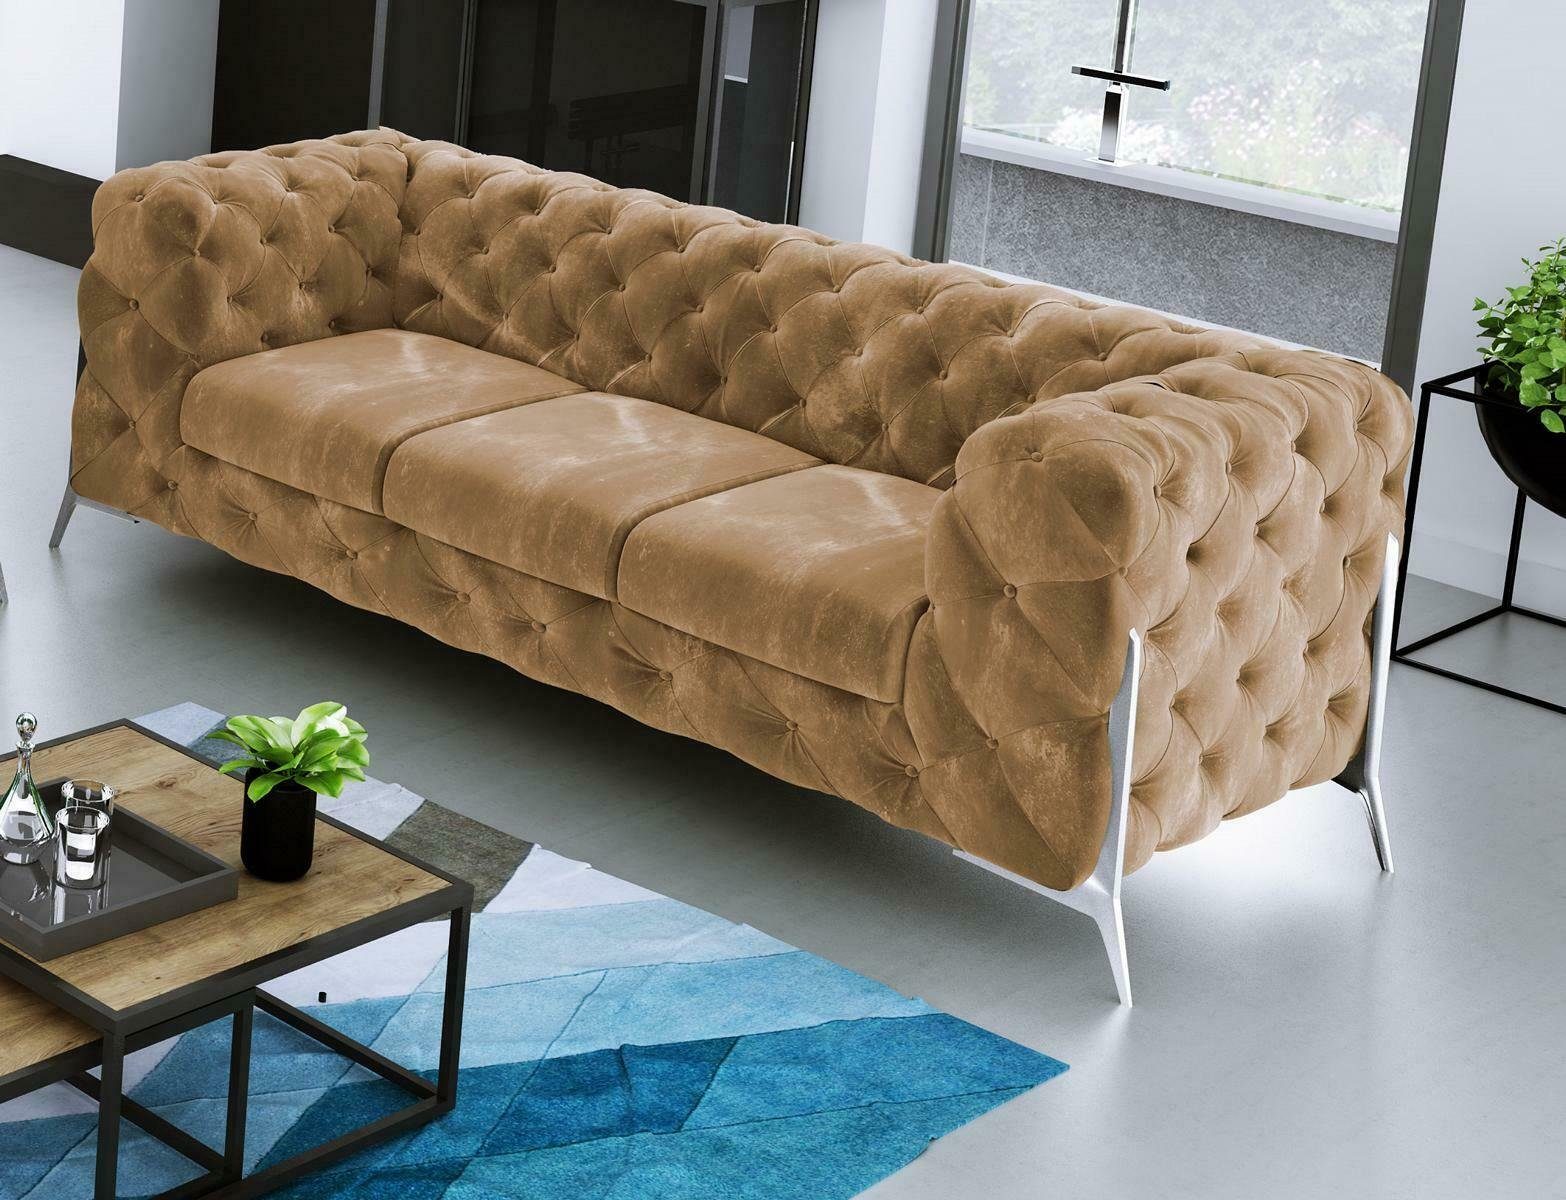 JVmoebel Sofa Moderner Brauner Chesterfield Dreisitzer Luxus Polster Couch Neu, Made in Europe